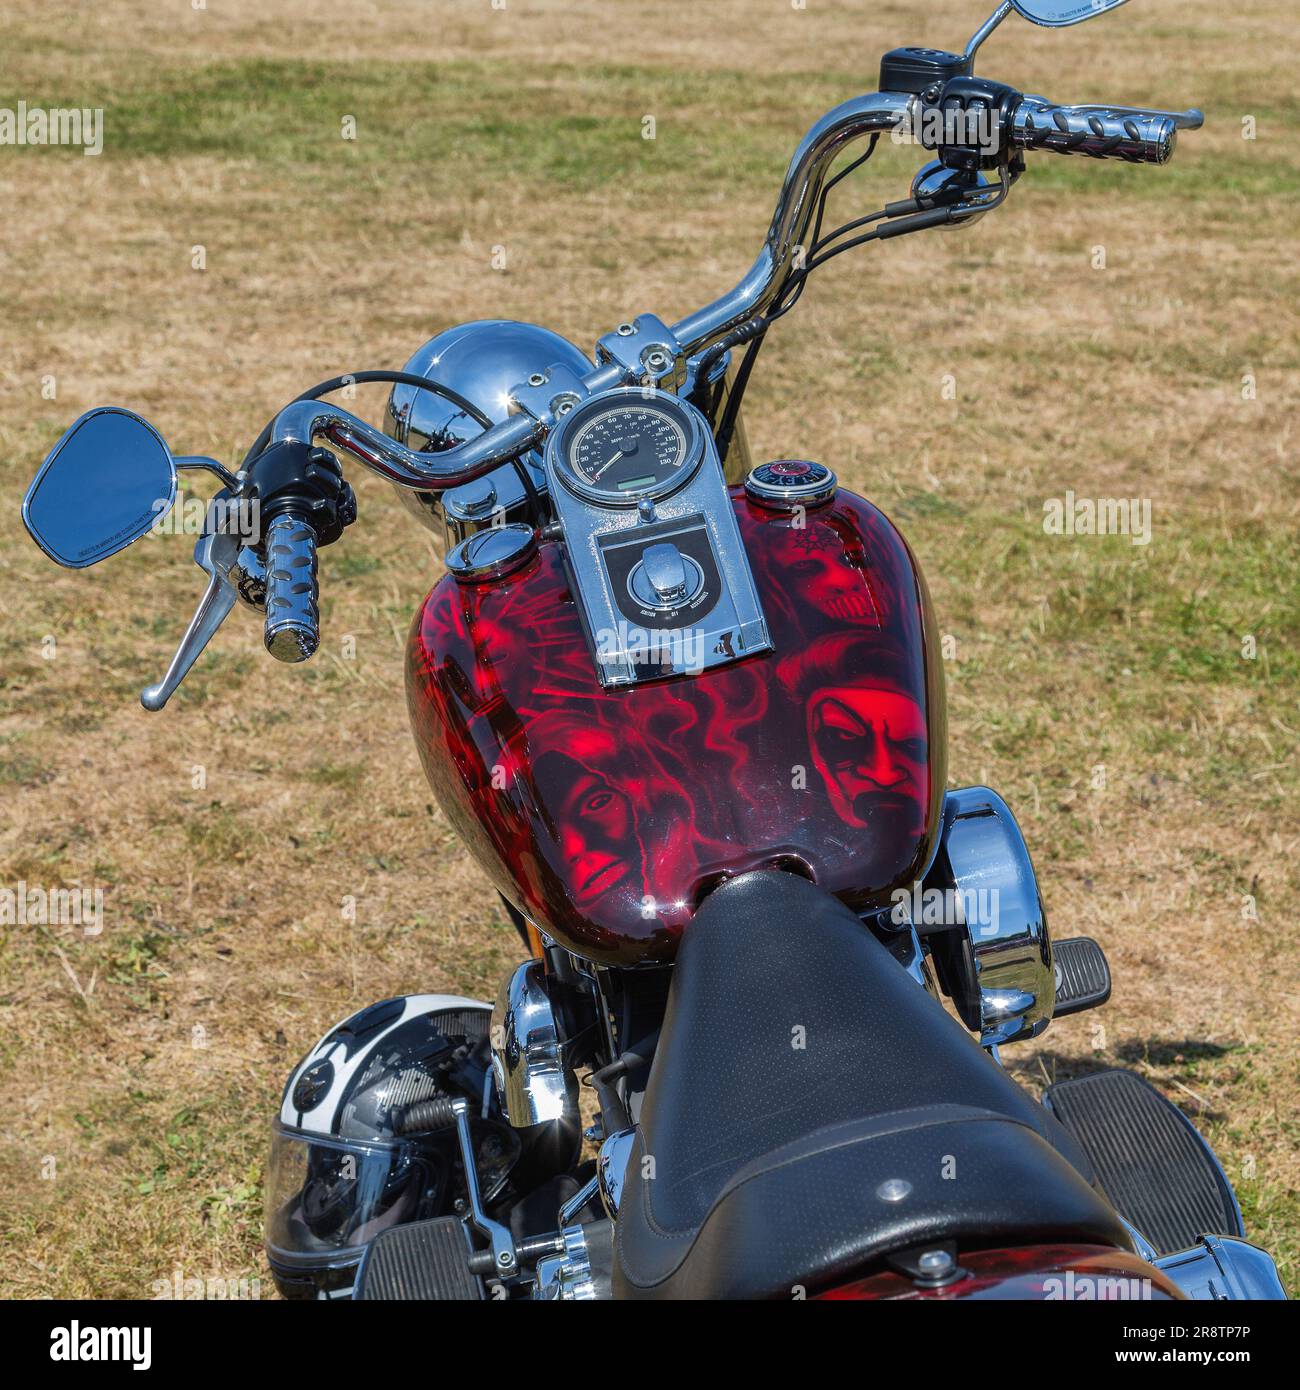 Details eines leistungsstarken Motorrads mit einem speziell lackierten Benzintank mit dem Heavy Metal Band Slipknot. Stockfoto